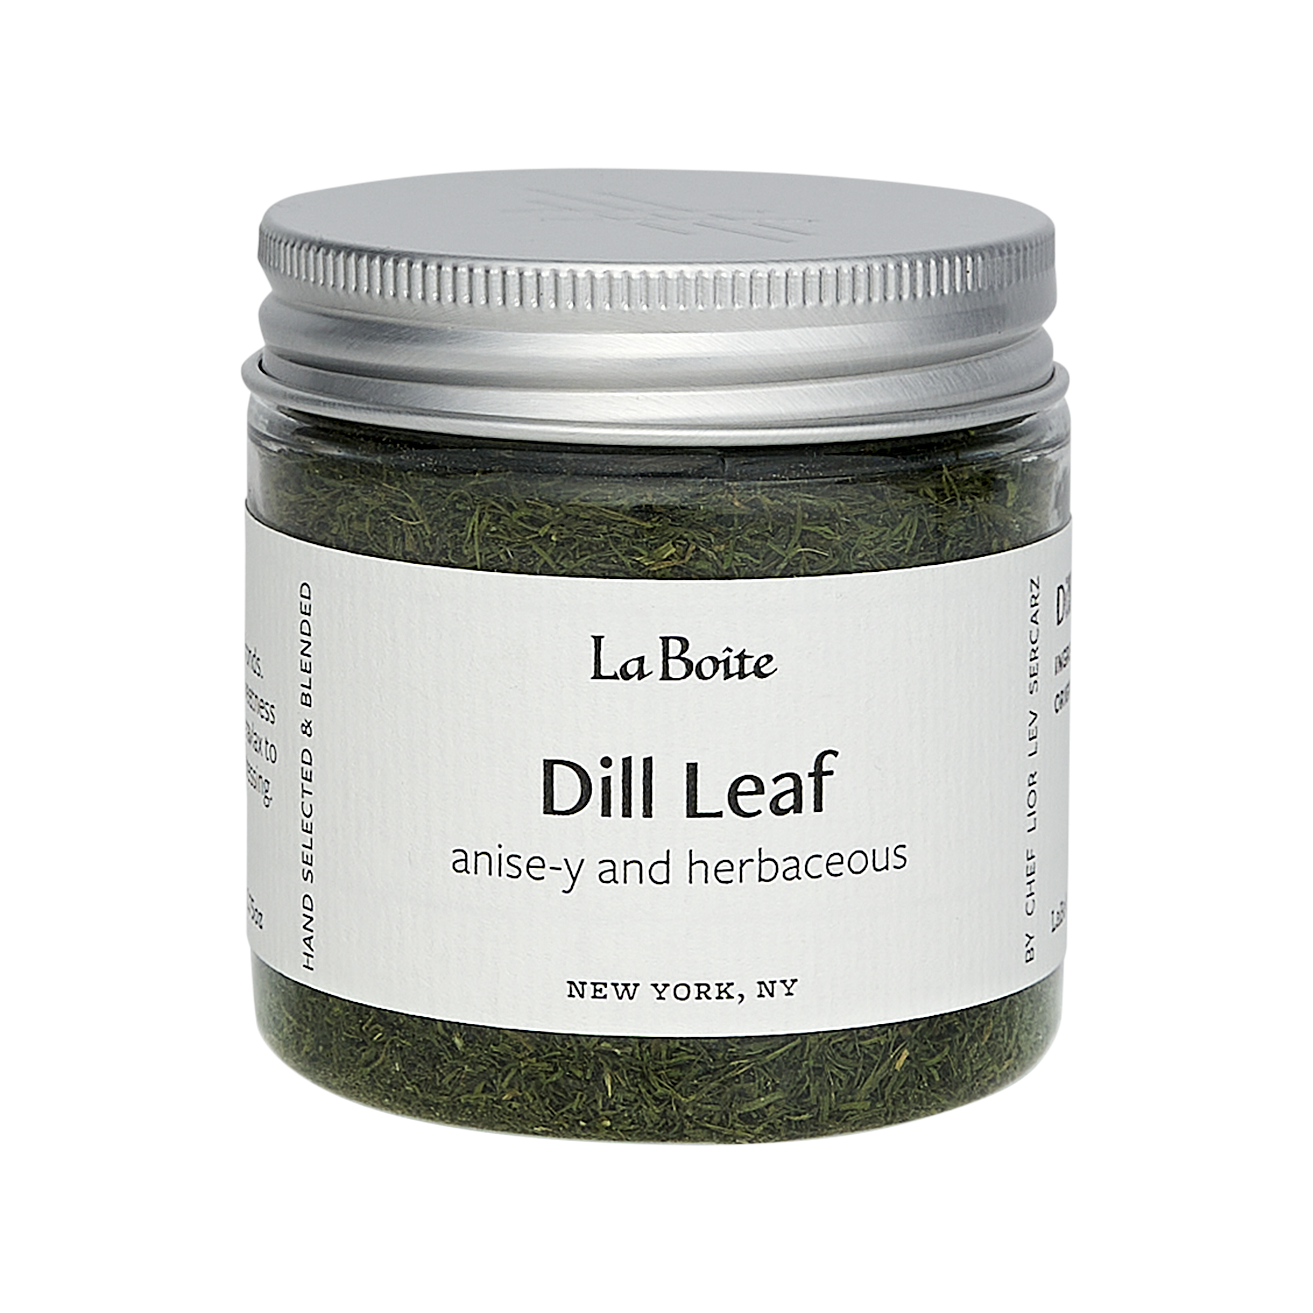 Dill Leaf